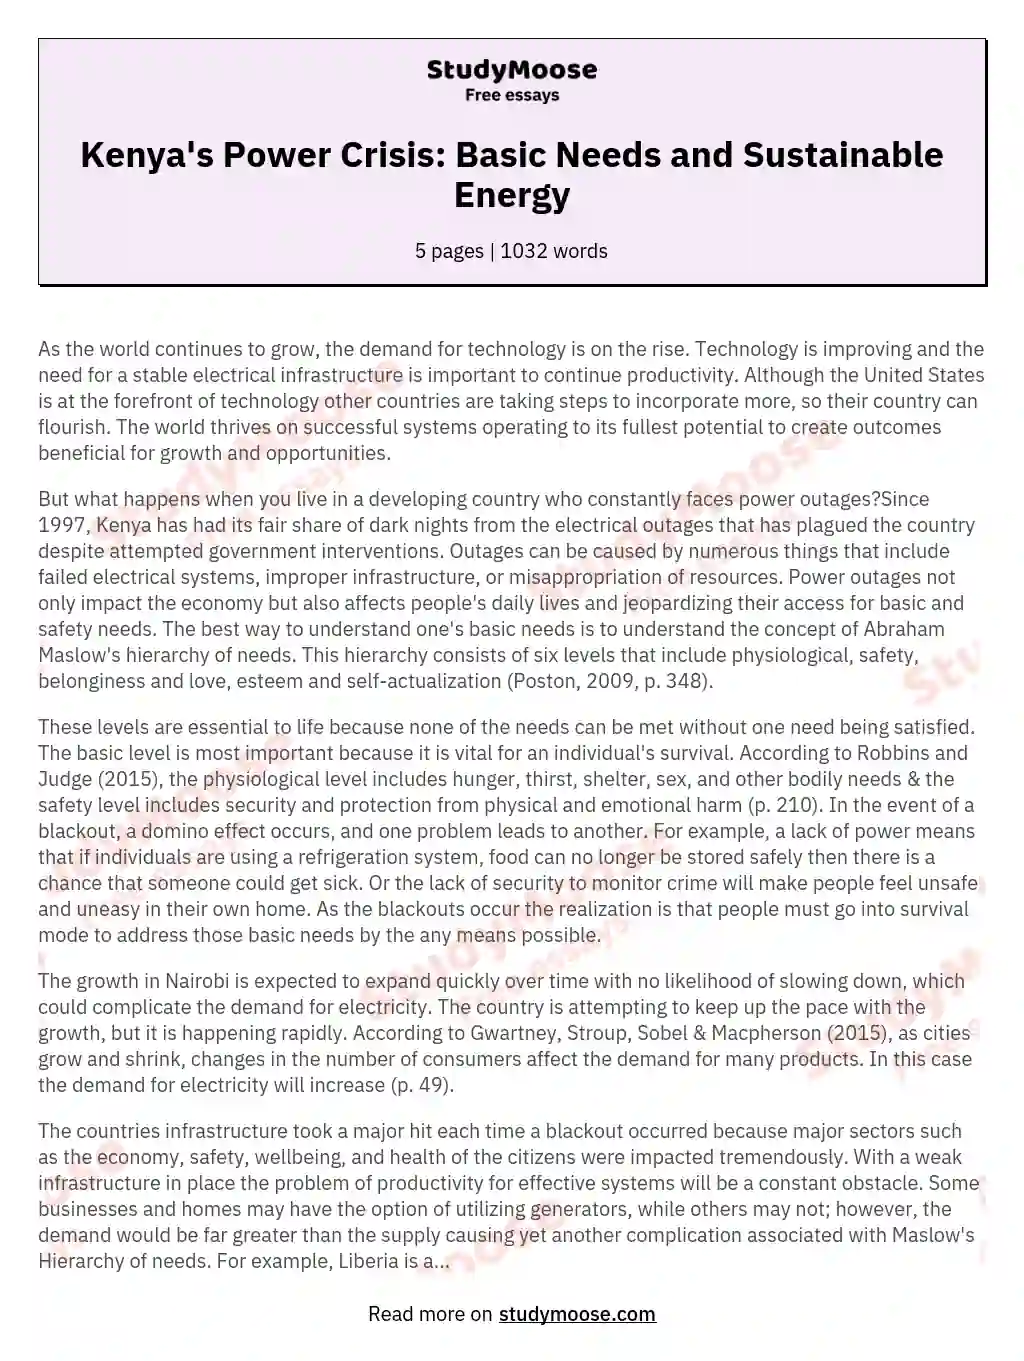 Kenya's Power Crisis: Basic Needs and Sustainable Energy essay